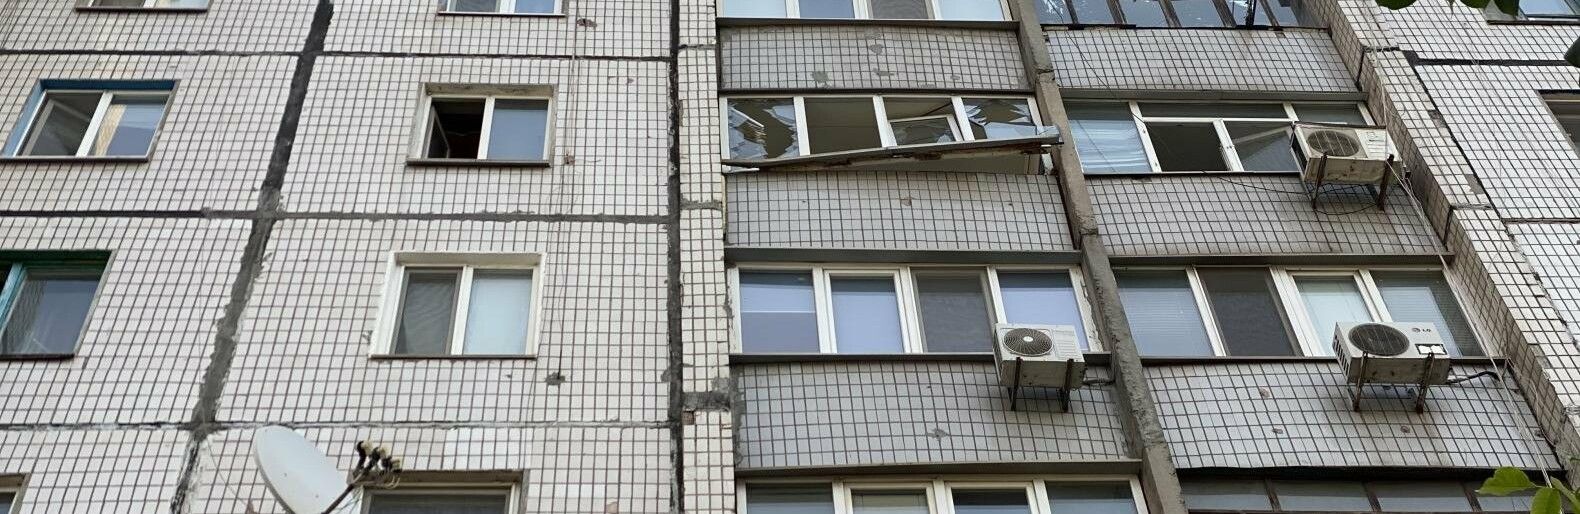 В Кривом Роге прогремел взрыв в девятиэтажке - на балконе кричат дети